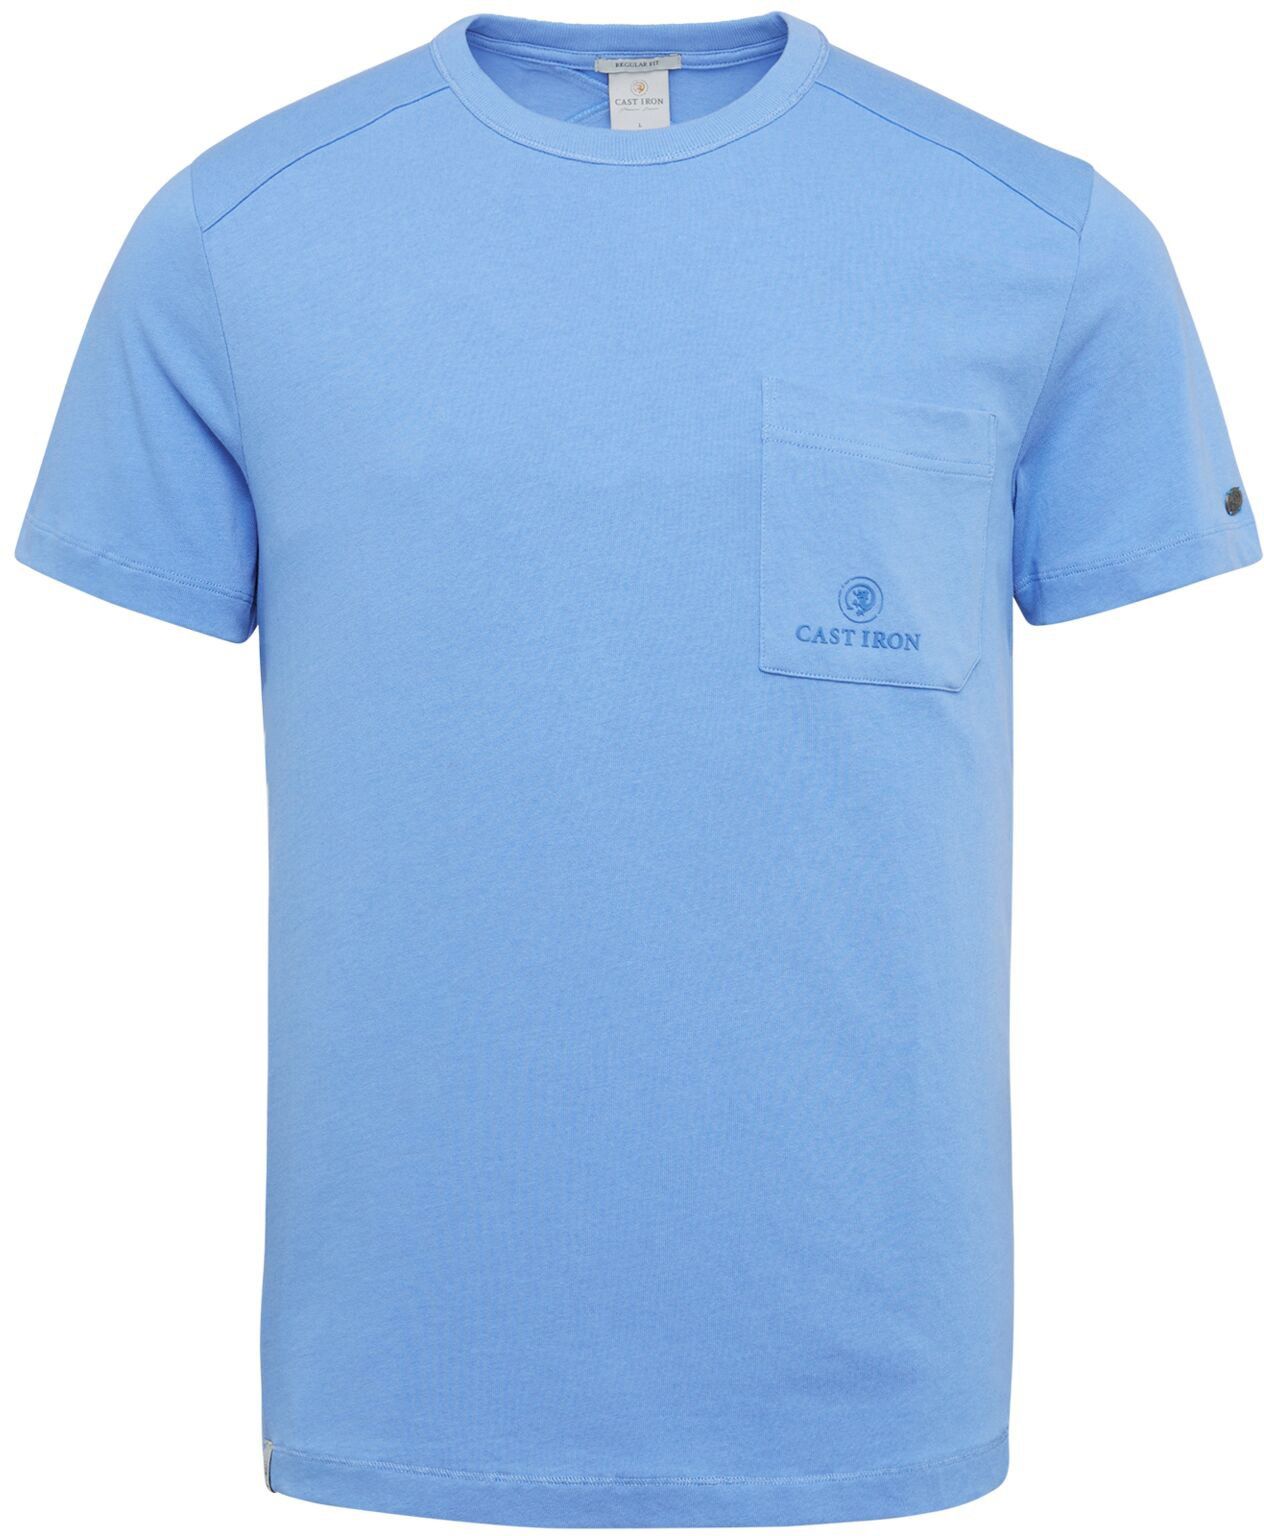 Cast Iron T Shirt Chest Pocket Light blue Blue size L